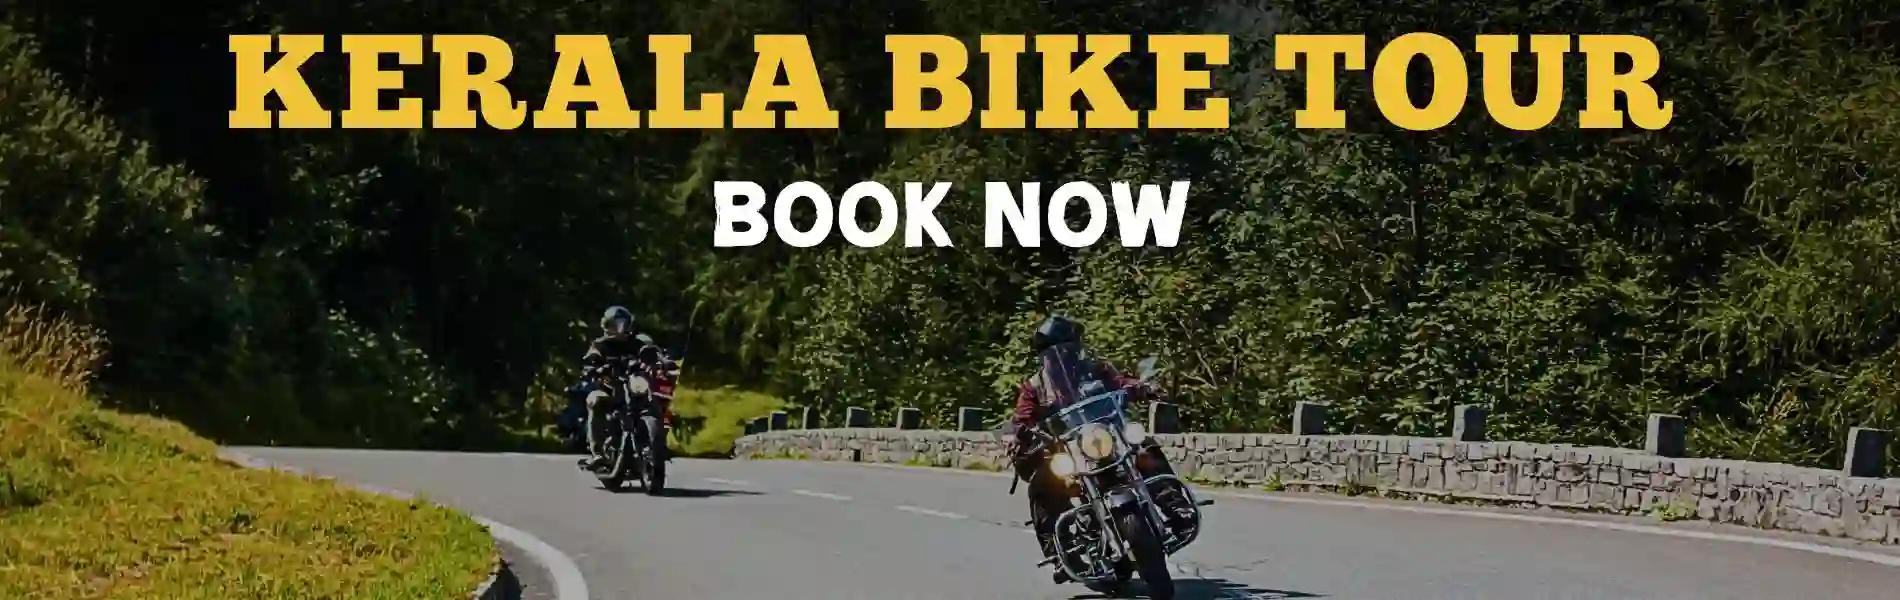 Kerala bike tour